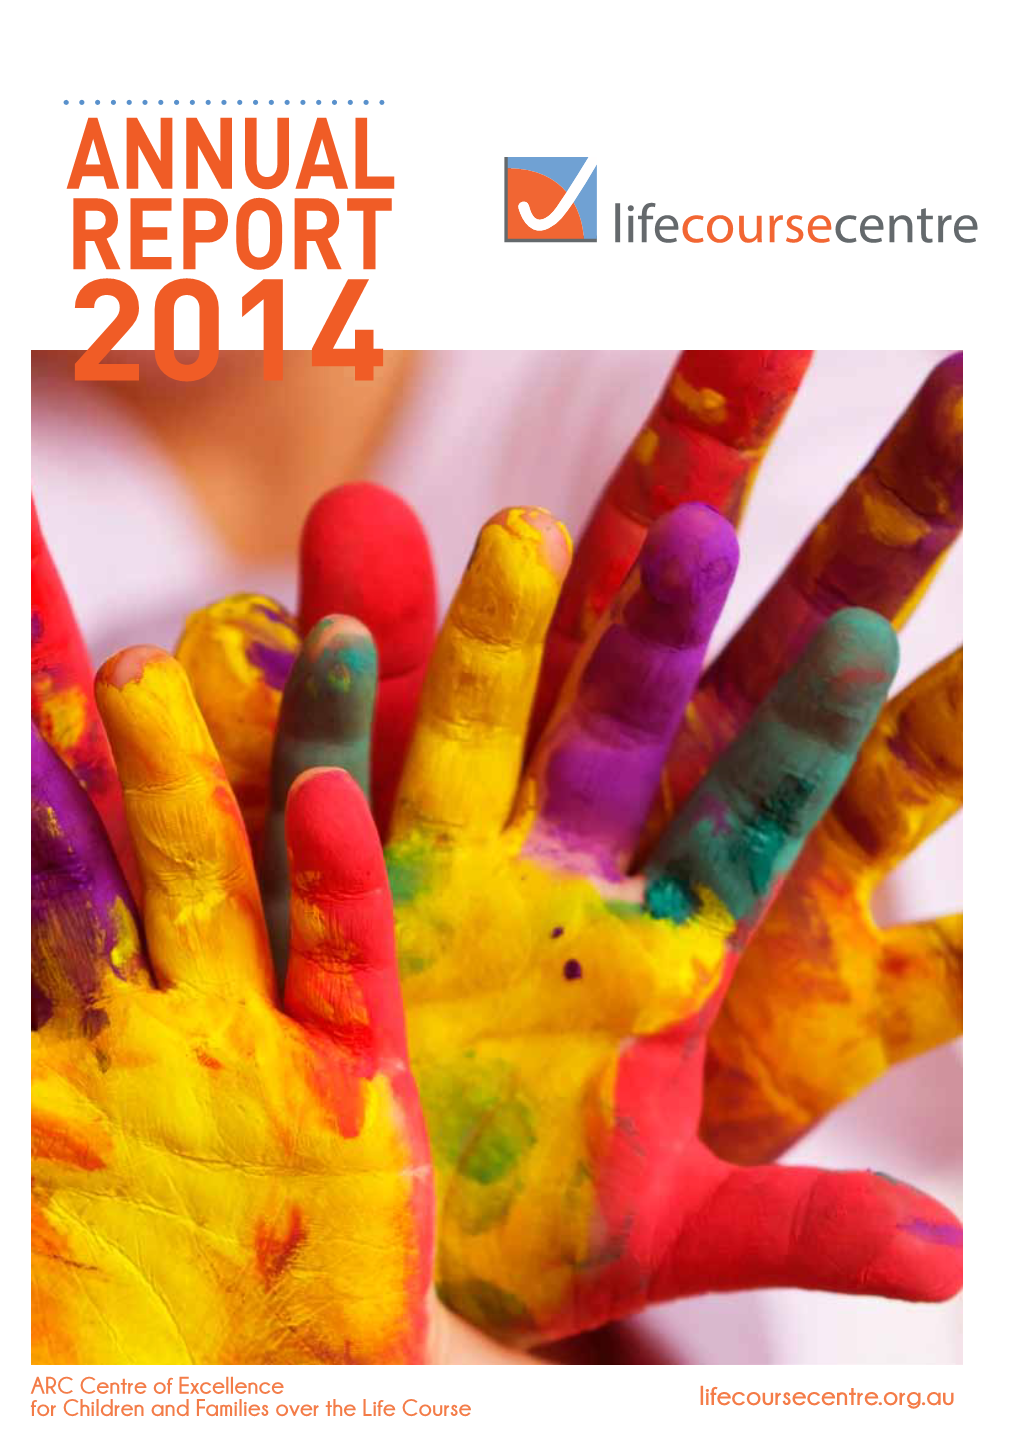 ANNUAL REPORT Lifecoursecentre 2014